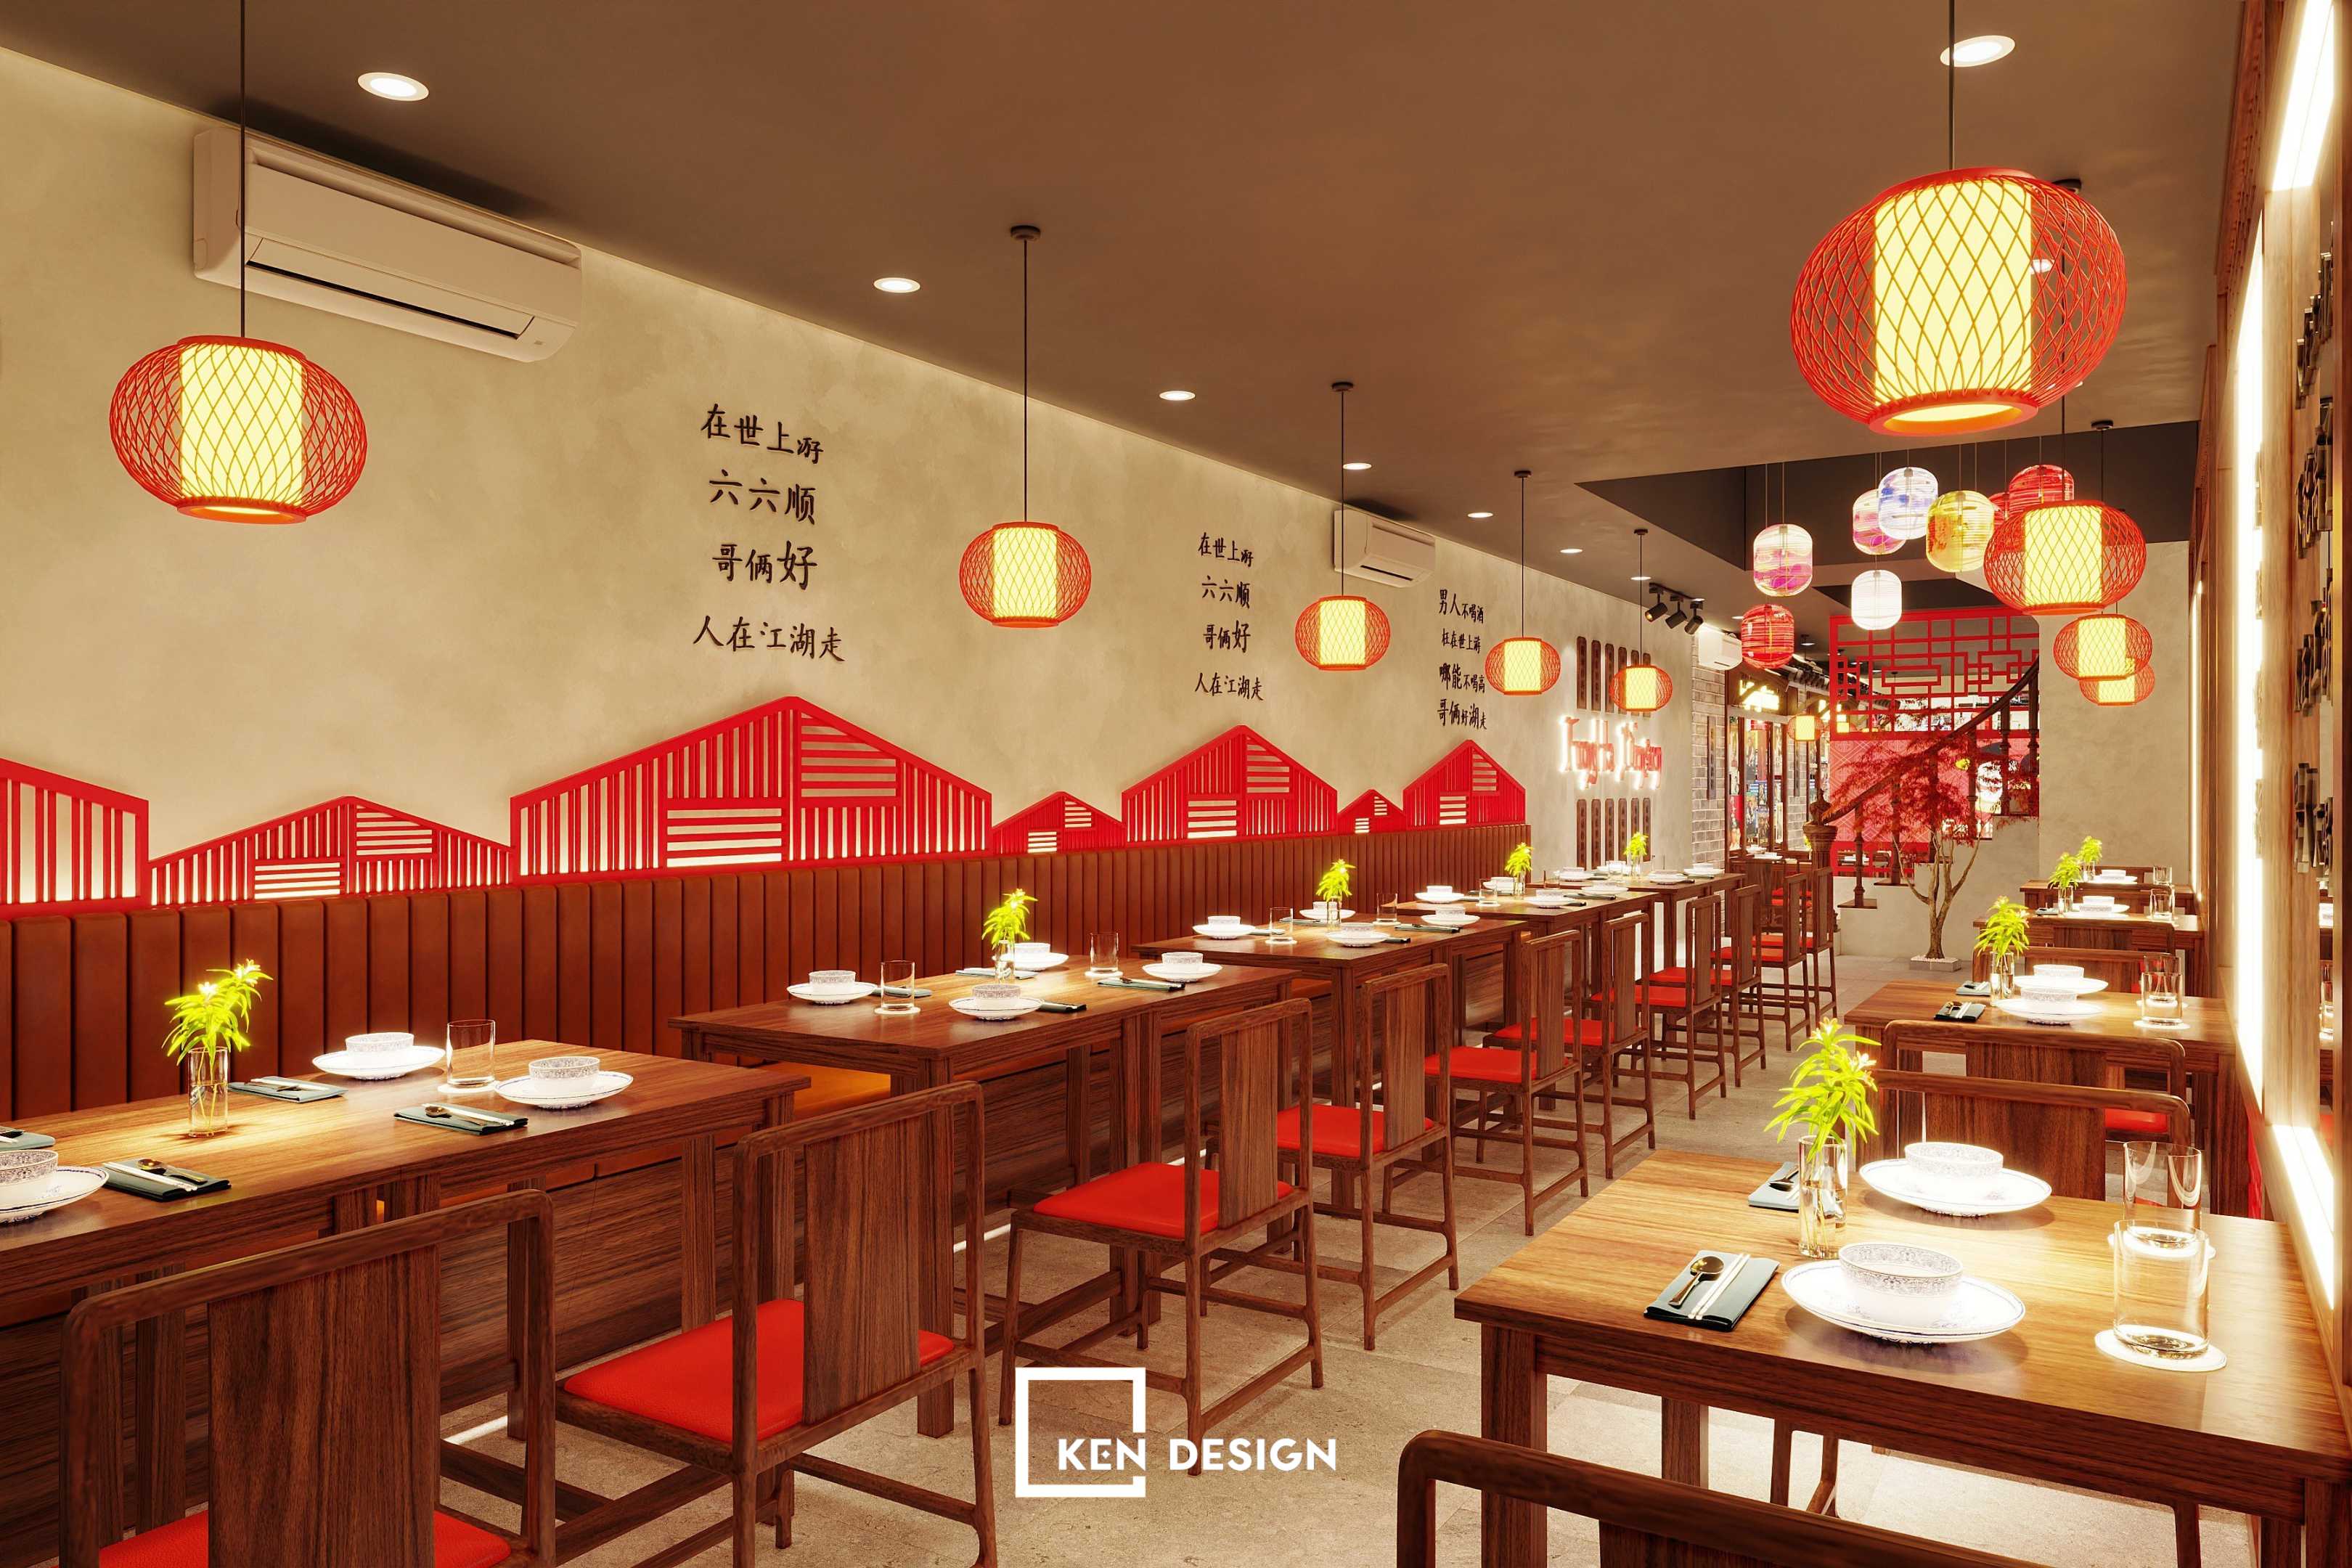 thiết kế nhà hàng Trung Hoa Fung Ha tại Cửa Bắc